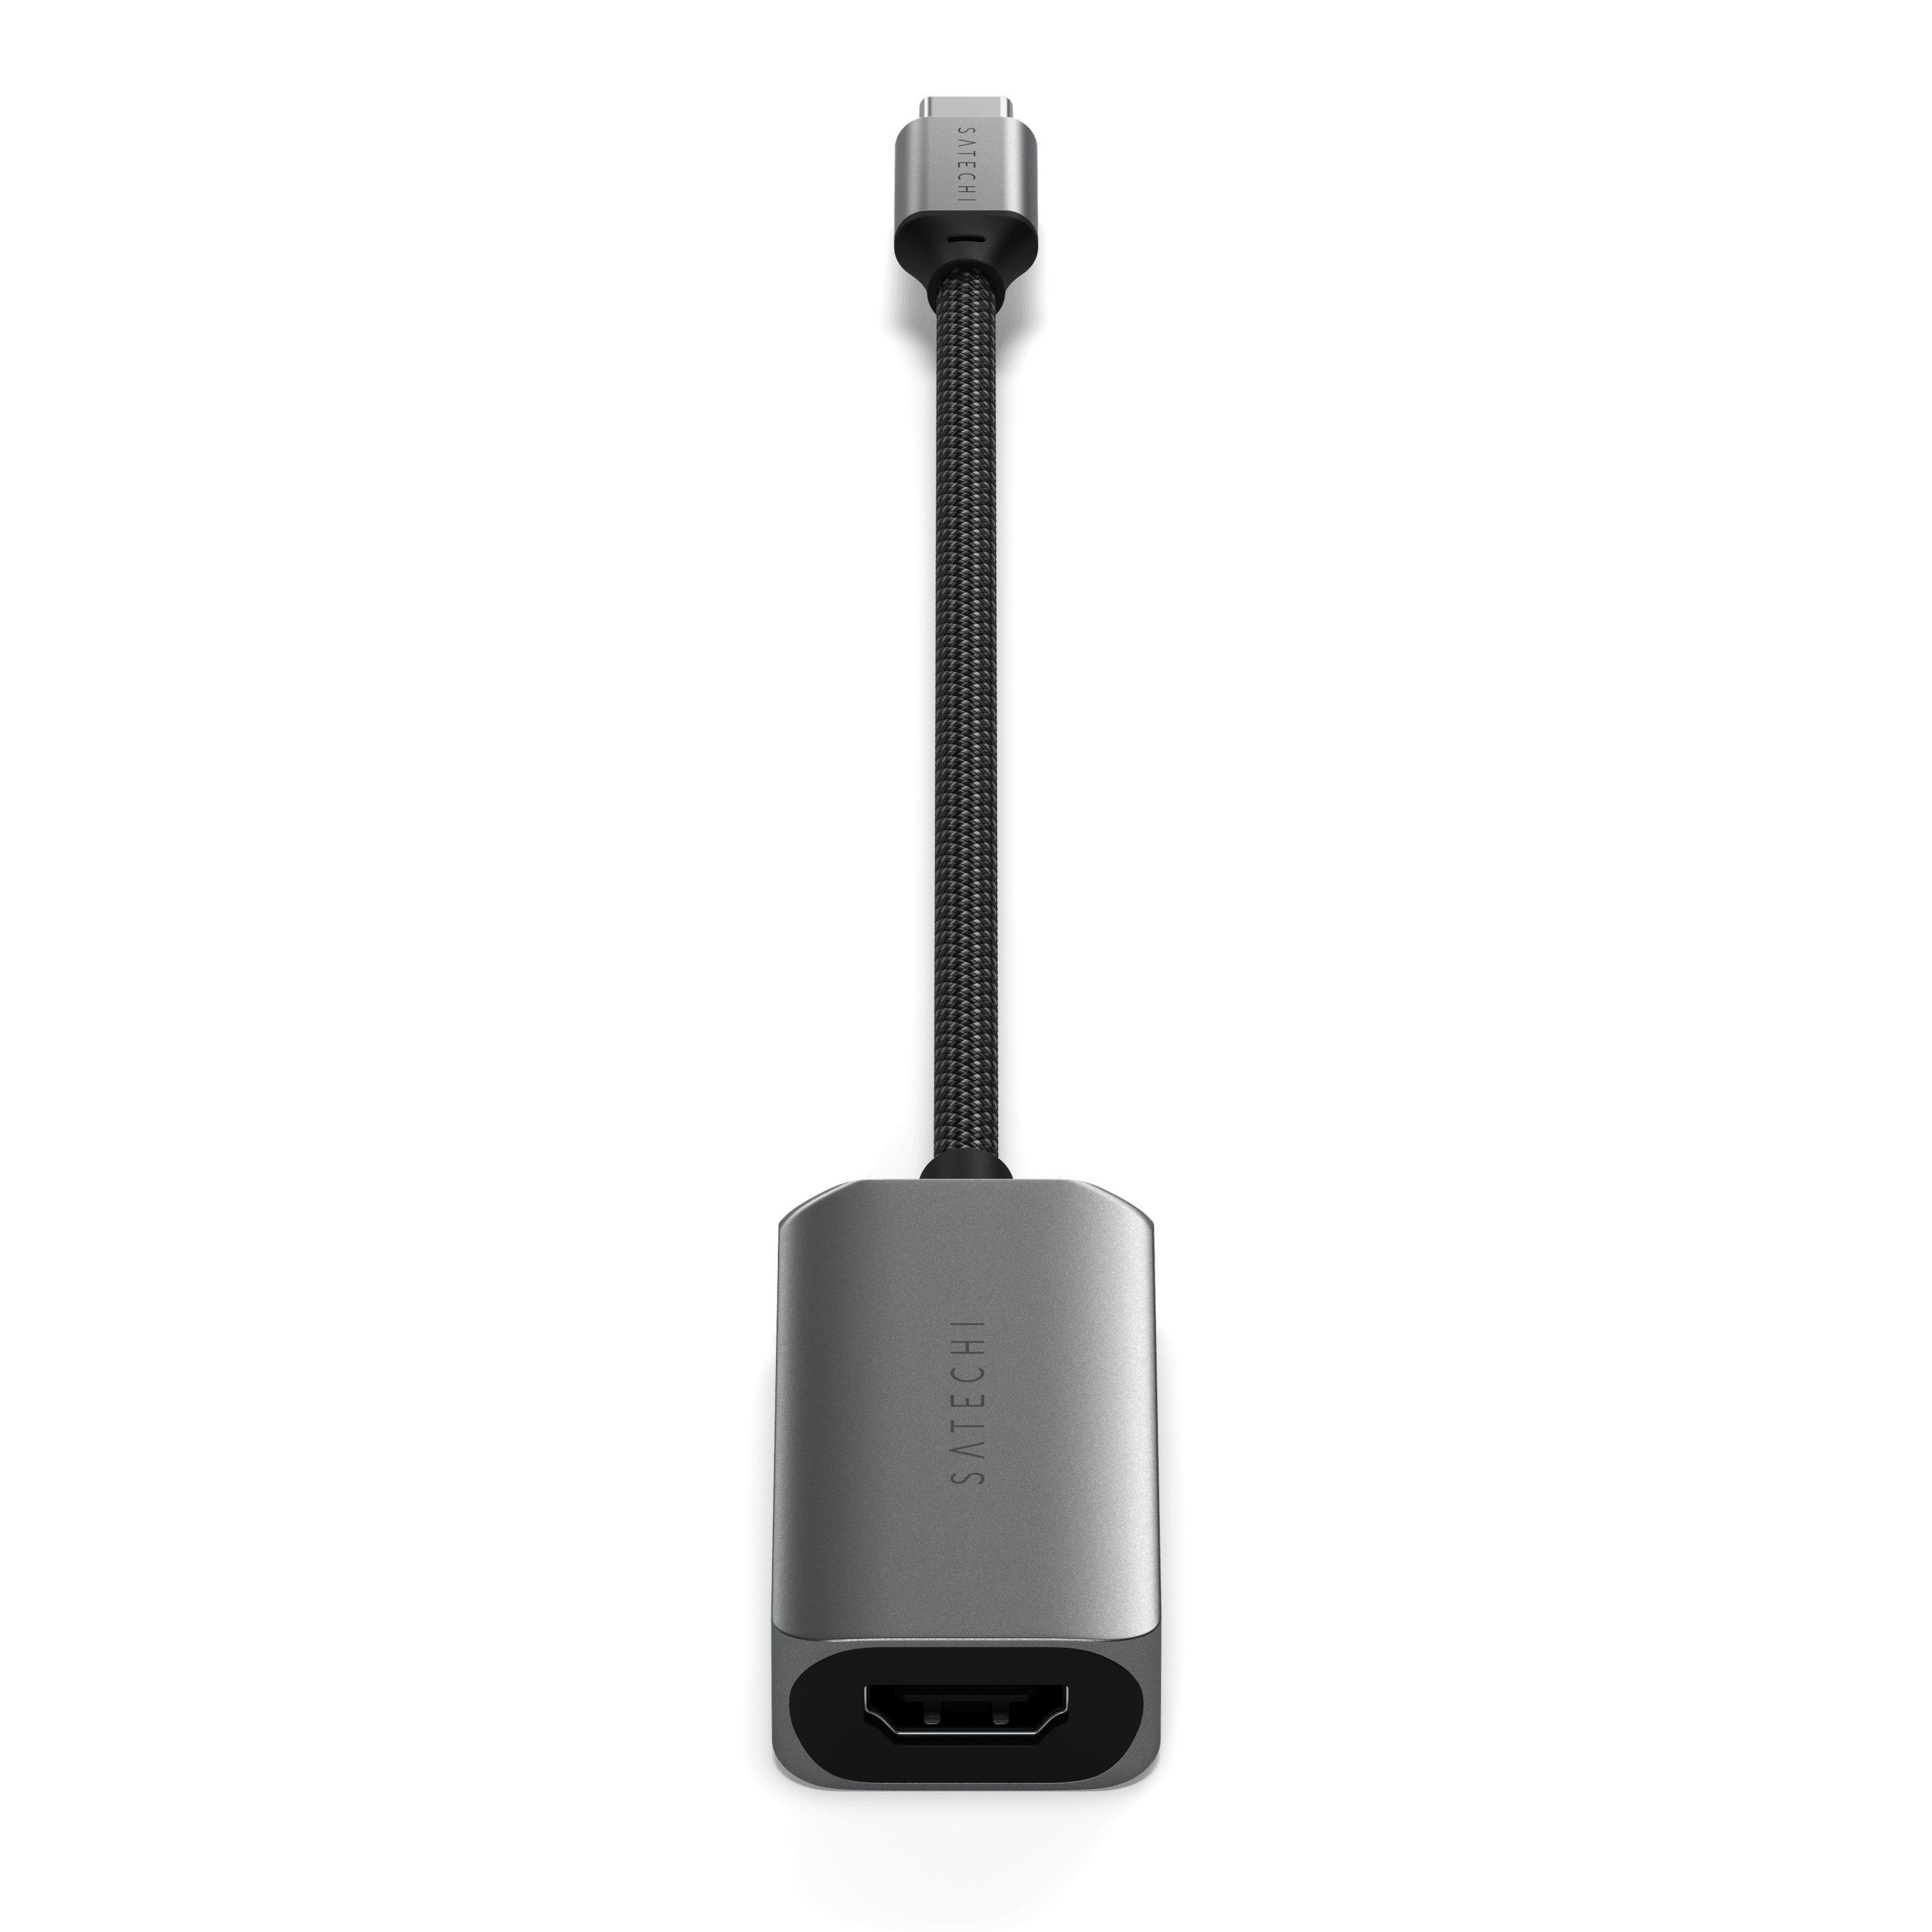 SATECHI - Adaptateur HDMI Double USB-C - Gris Foncé